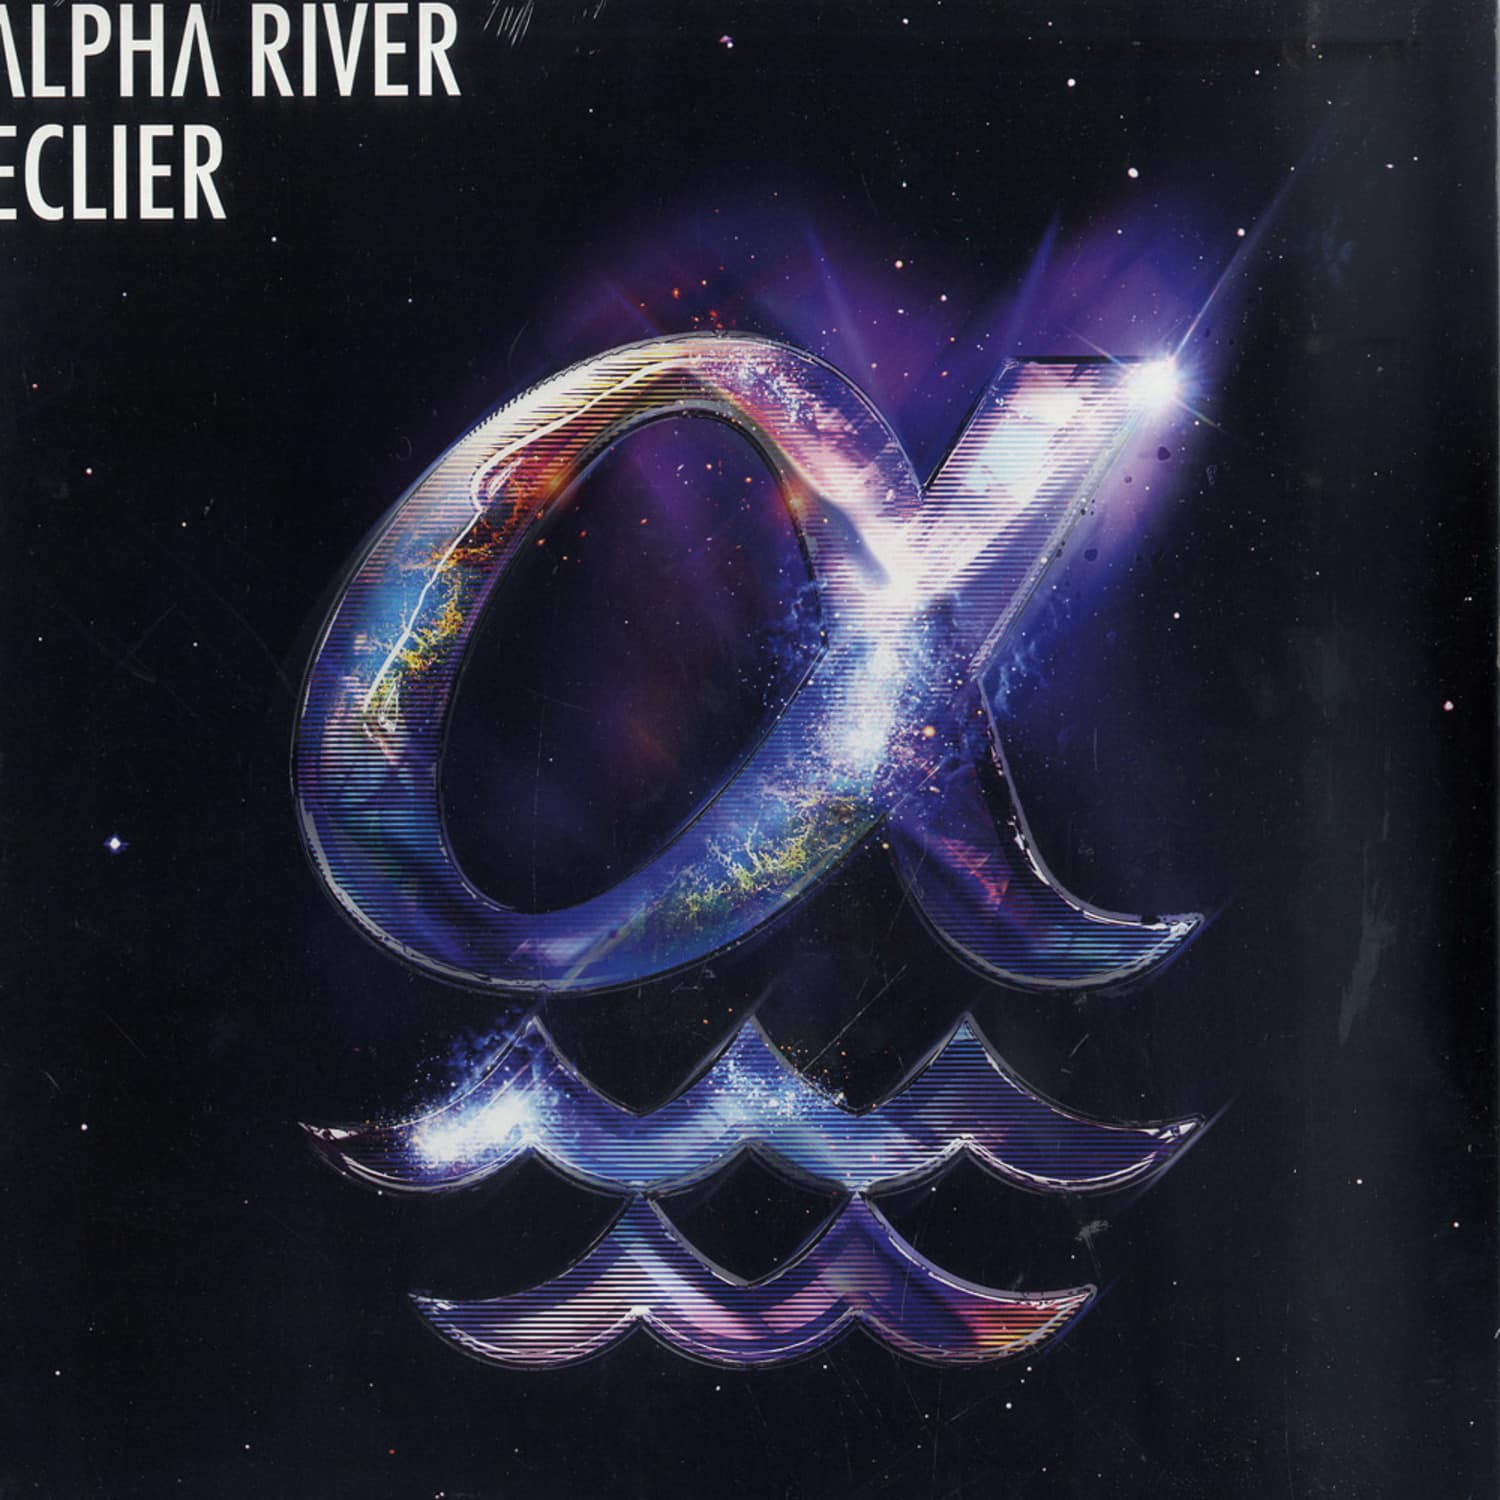 Eclier - ALPHA RIVER